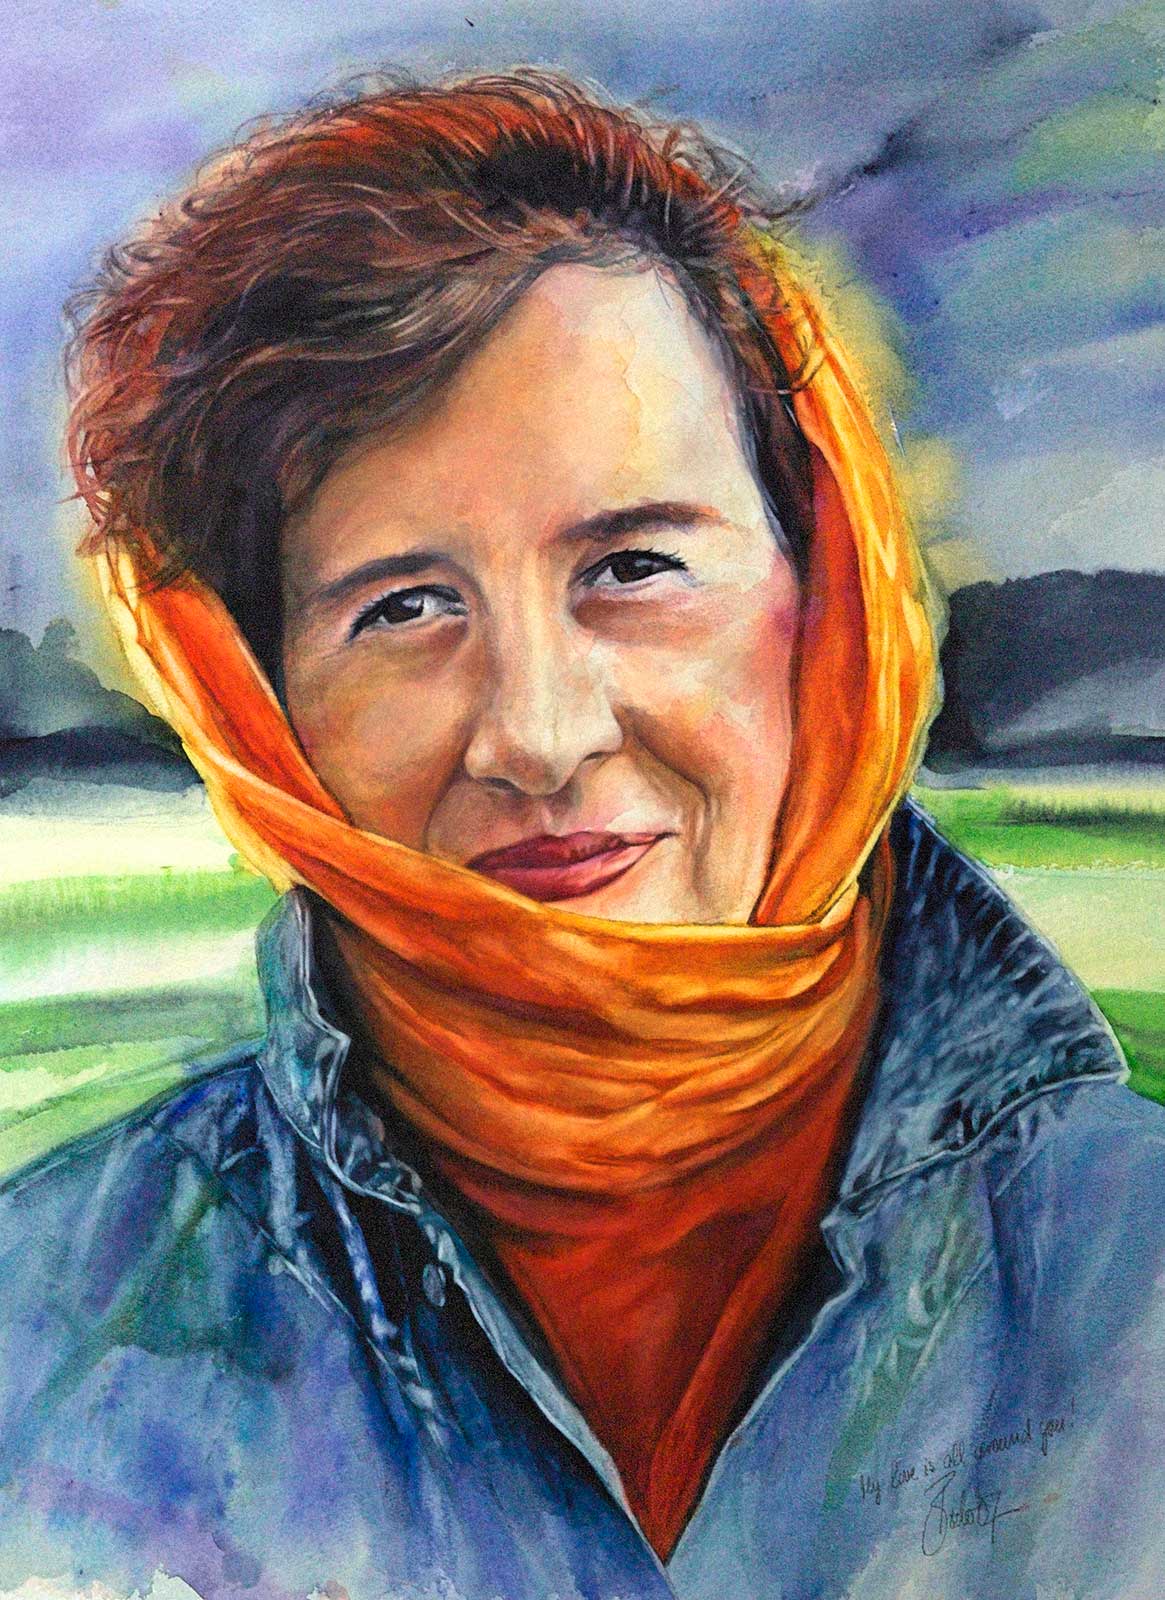 Colorful portrait of Cordia painted in watercolors; Farbenfrohes Porträt von Cordia in Aquarelltechnik